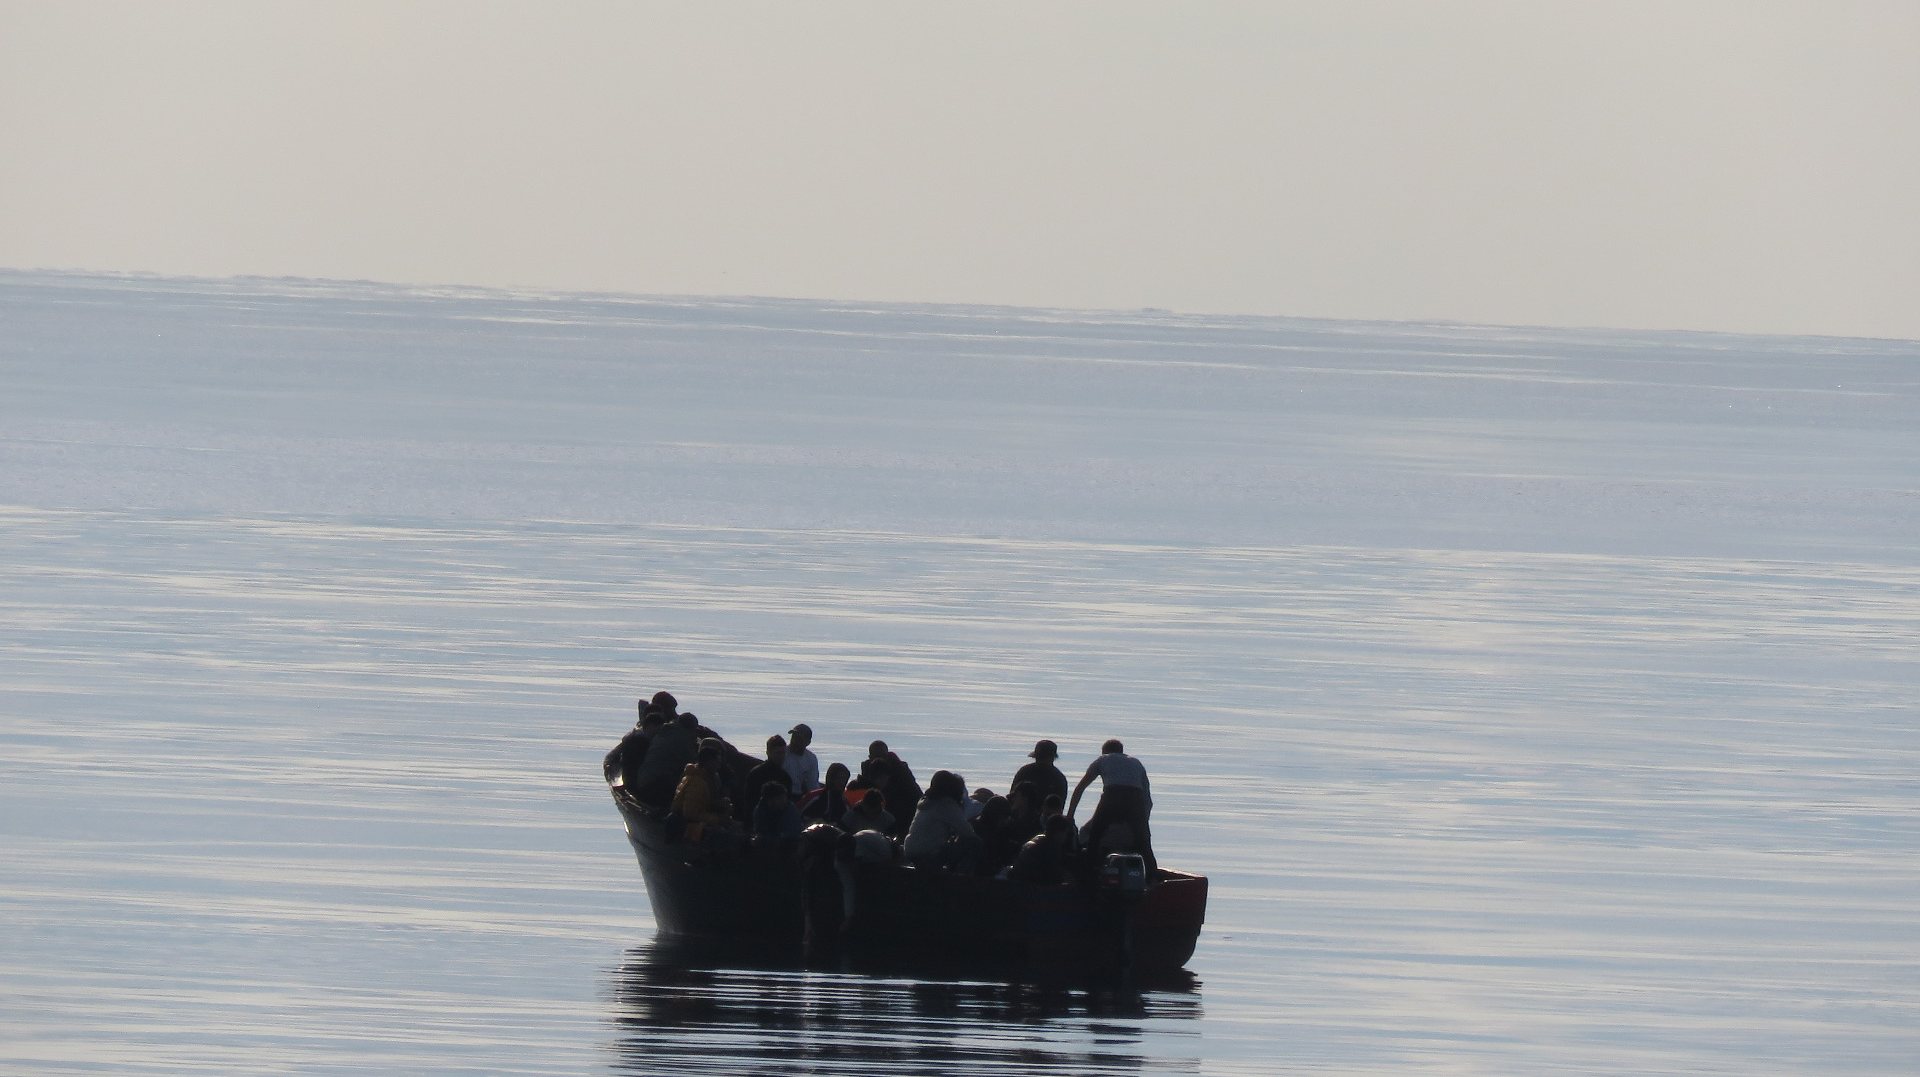 Resgate de 37 migrantes a sul do Algarve no dia 11 de novembro de 2021 pela Marinha Portuguesa. FOTO: Marinha